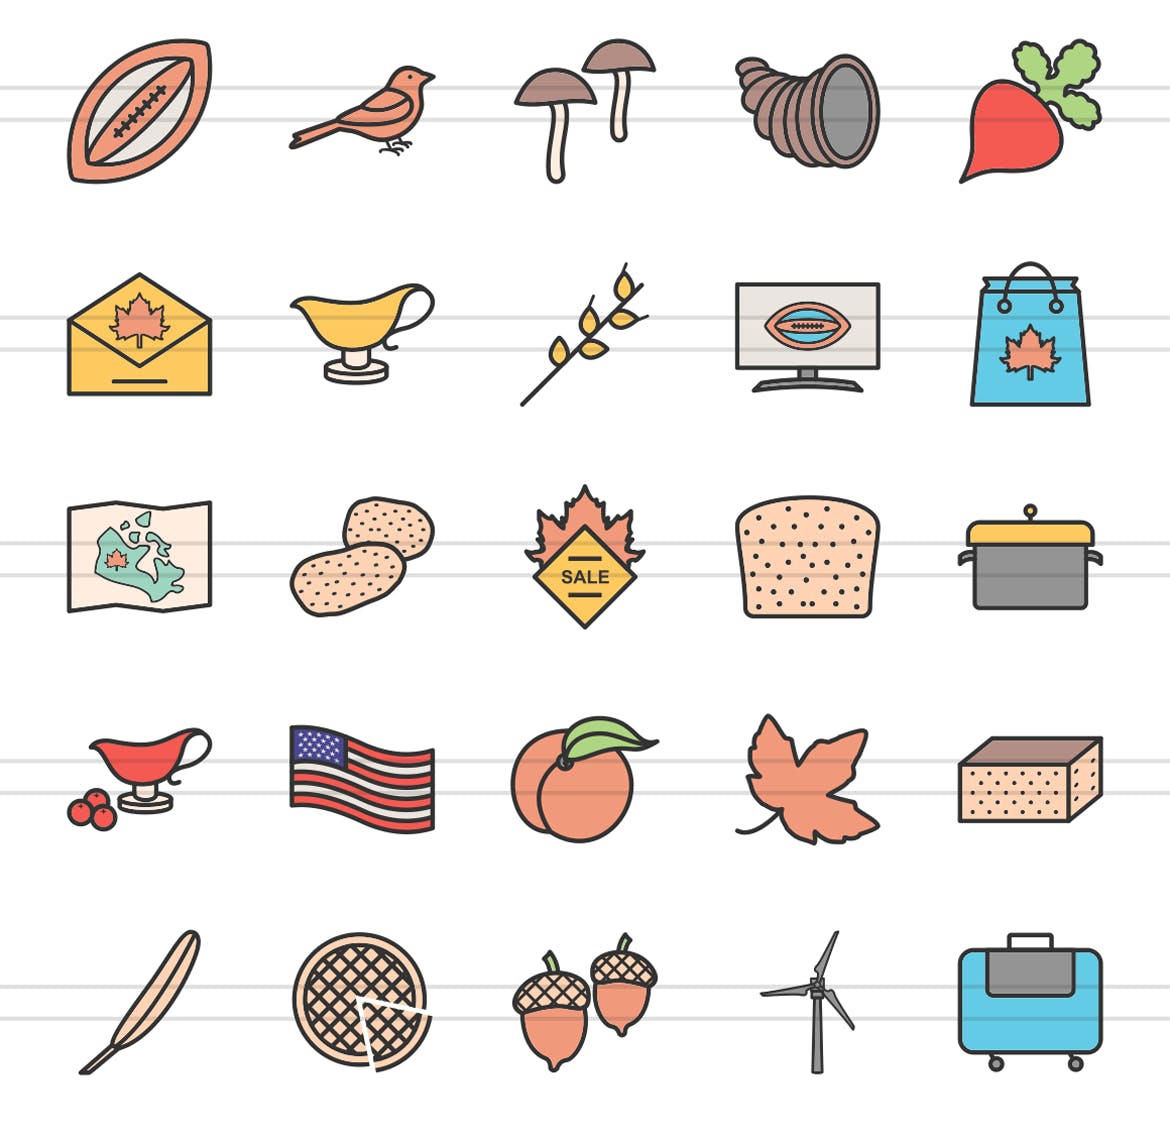 50枚感恩节颜色填充线性16设计素材网精选图标素材 50 Thanksgiving Filled Line Icons插图(2)